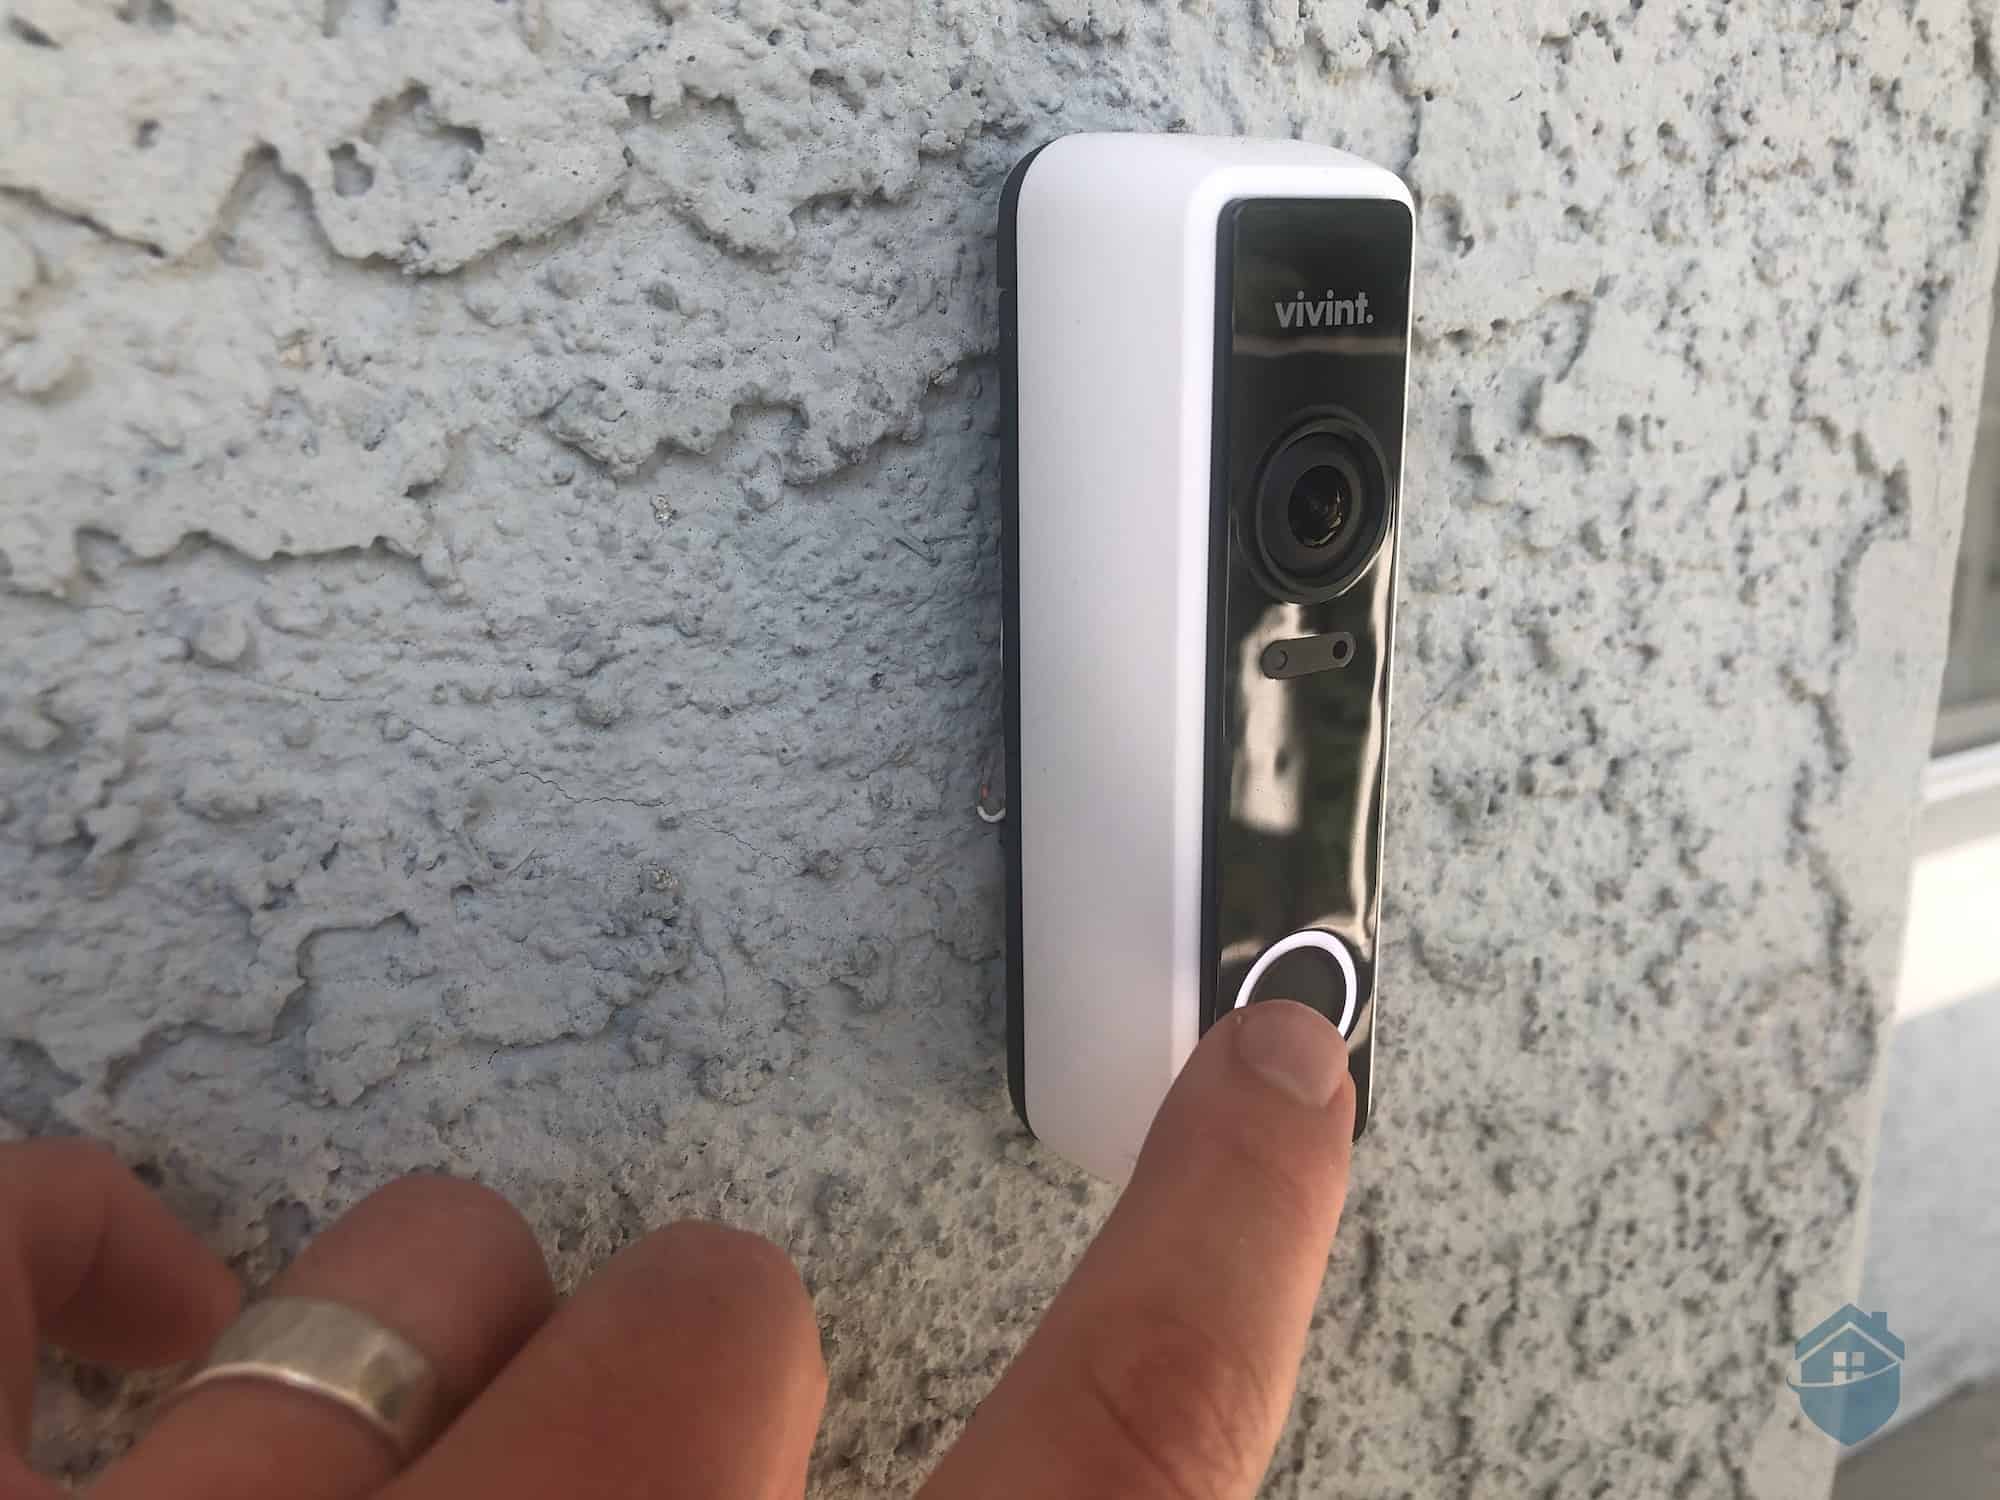 Ringing the Vivint Doorbell